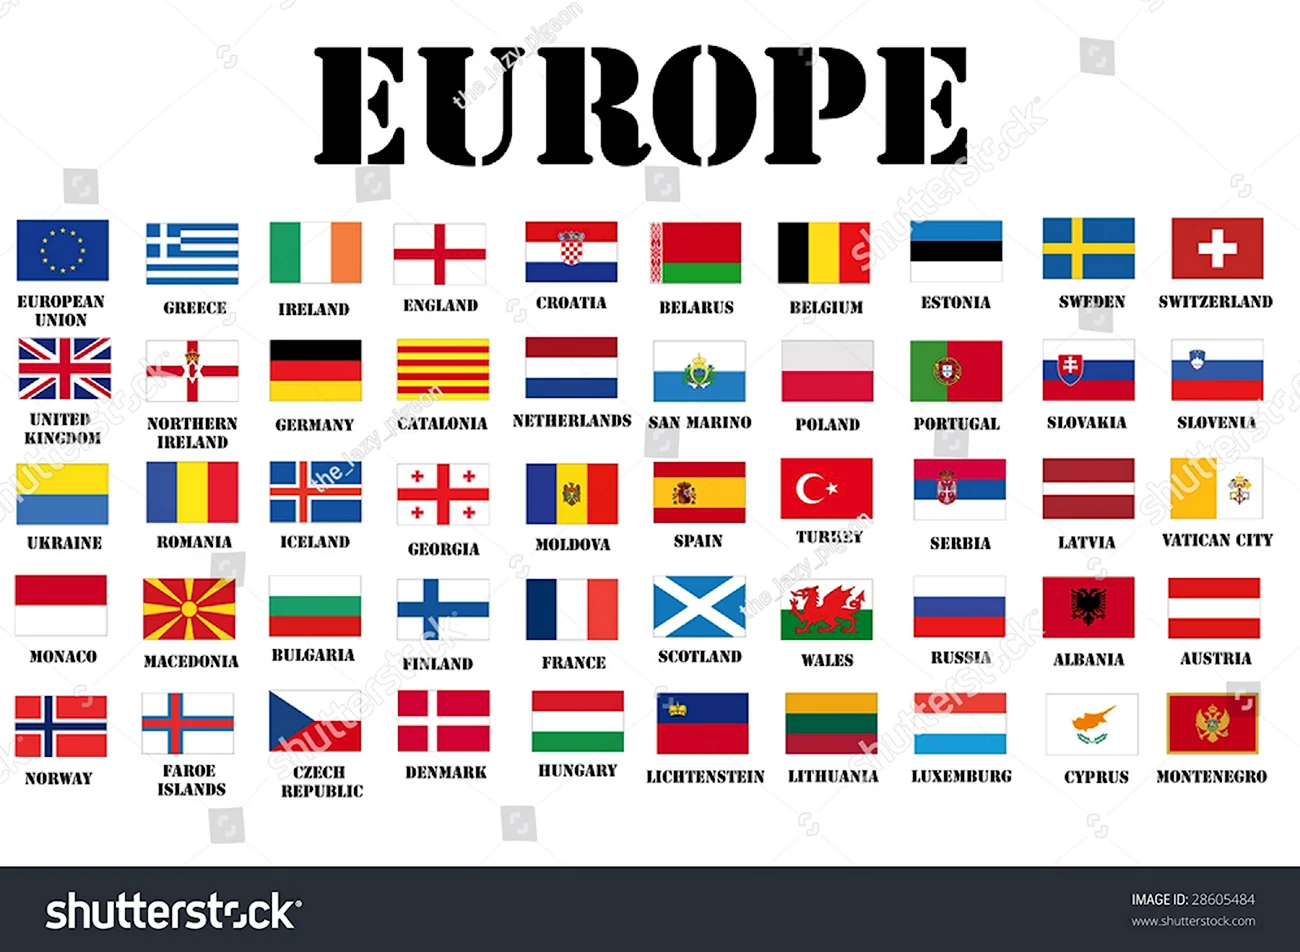 Флаги Европы с названиями страны на русском для детей. Красивая картинка